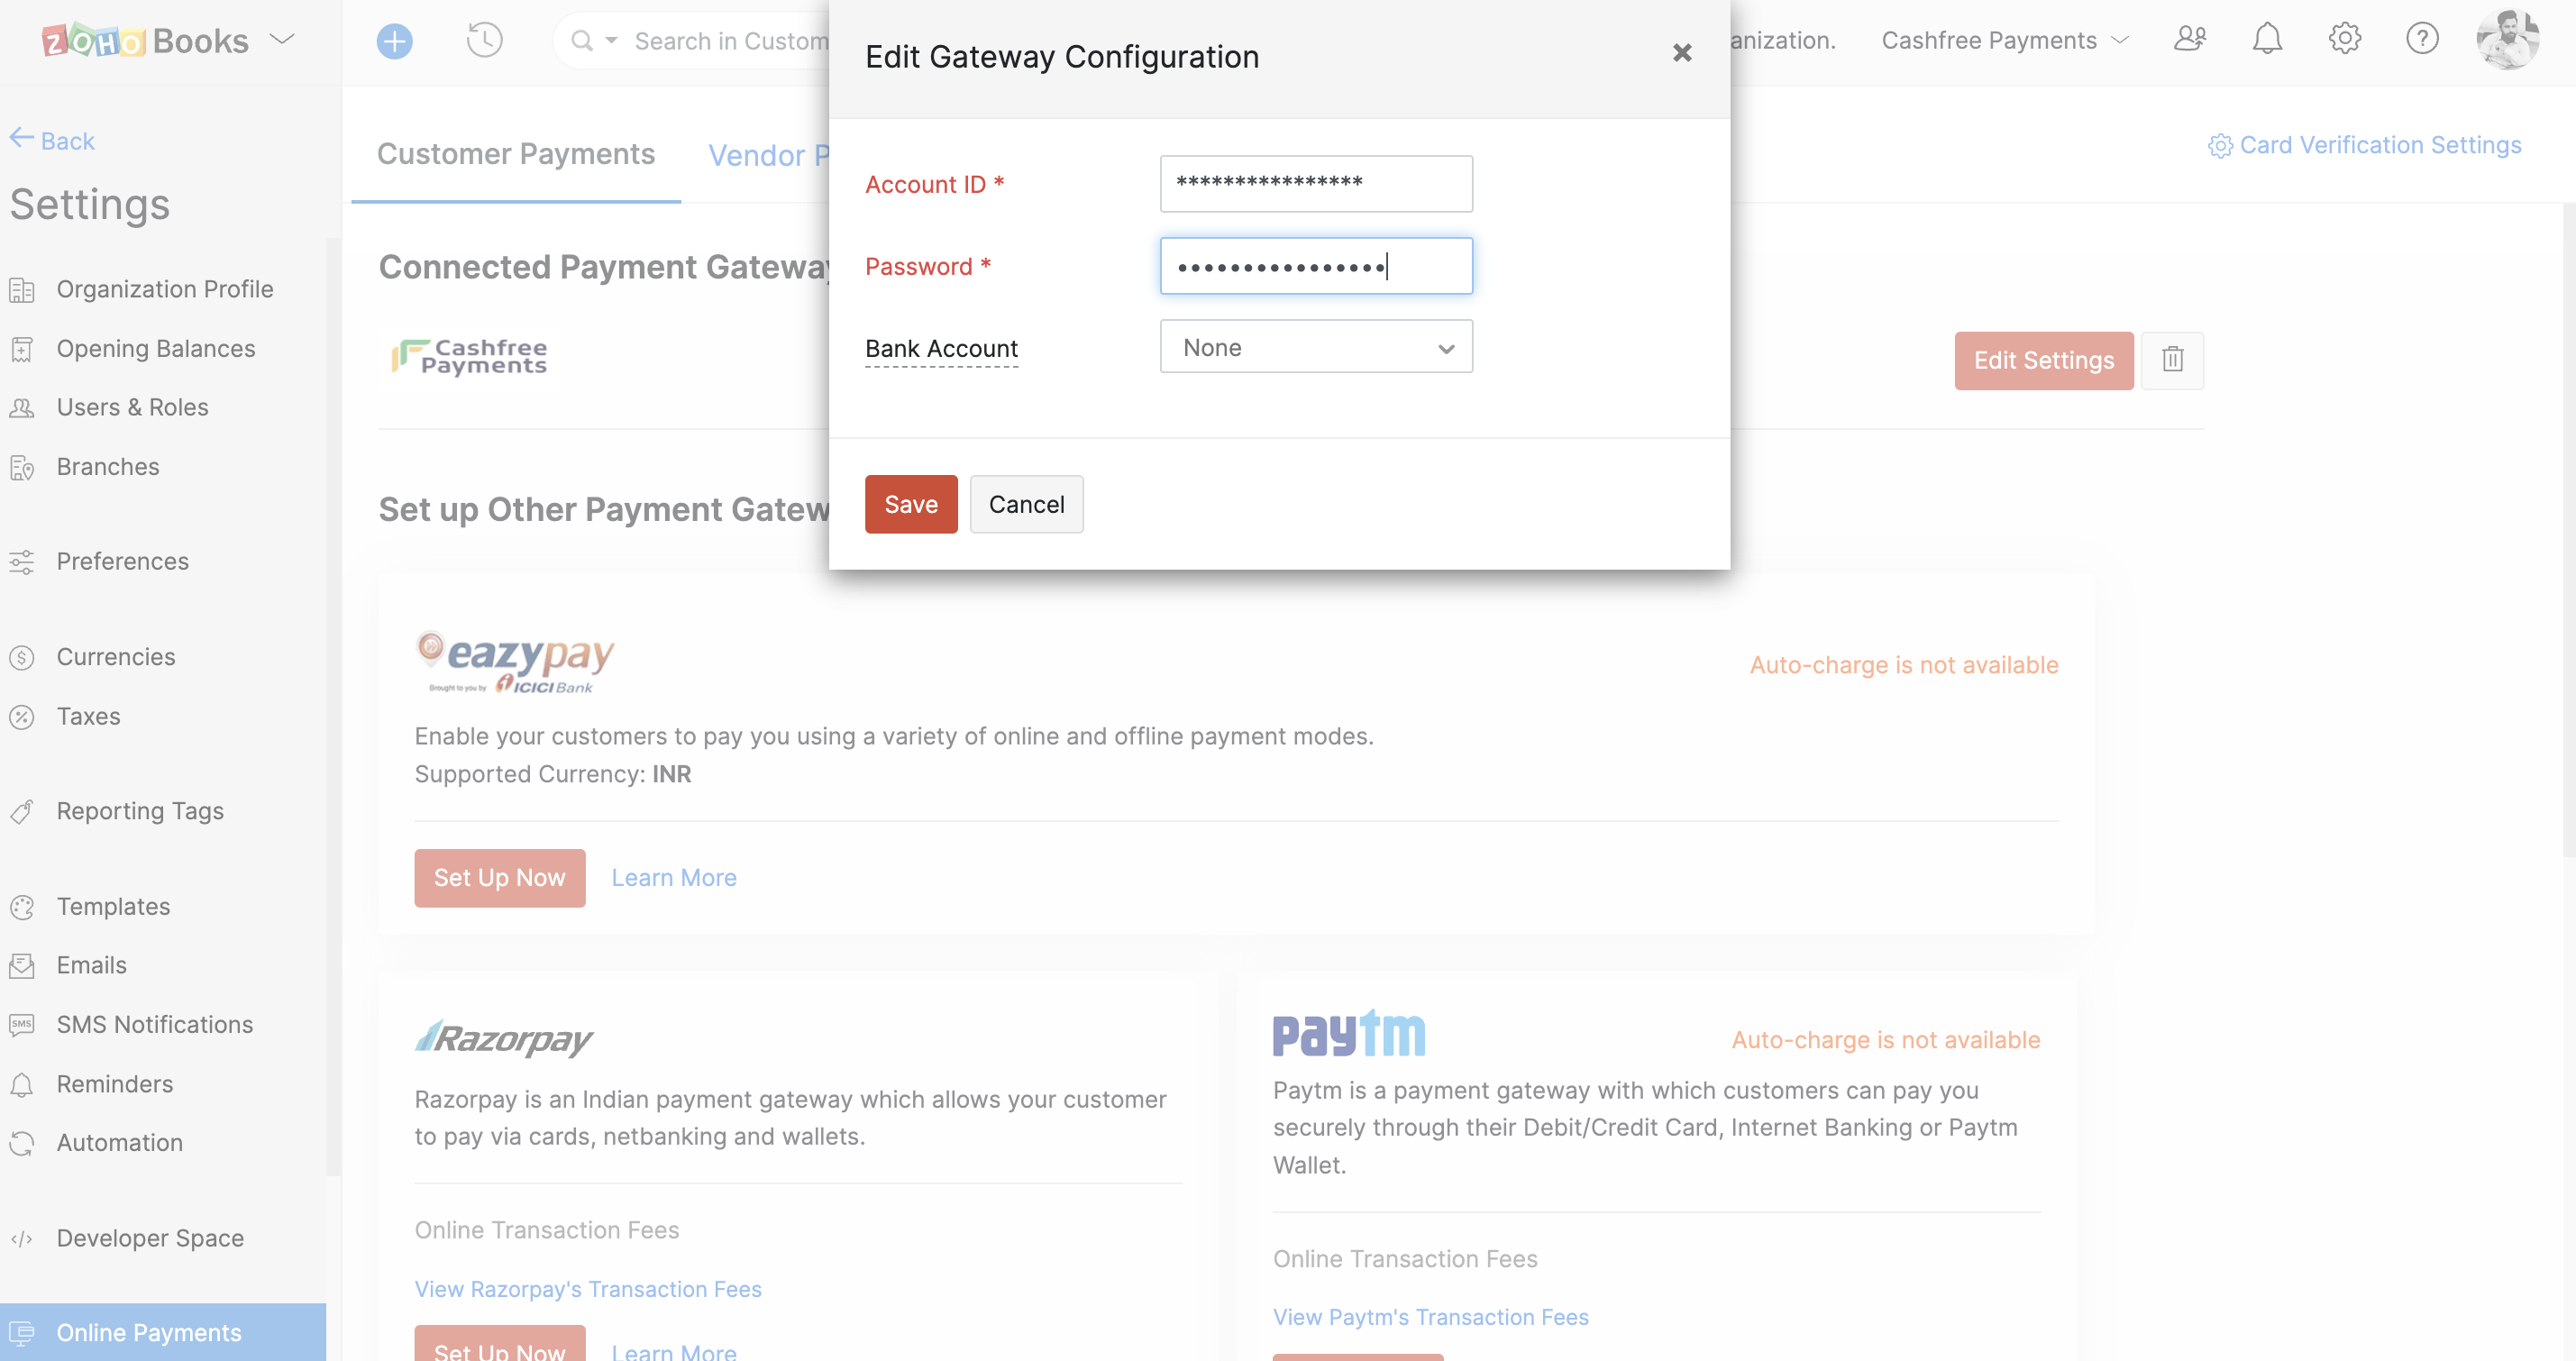 Payment Gateway Configuration